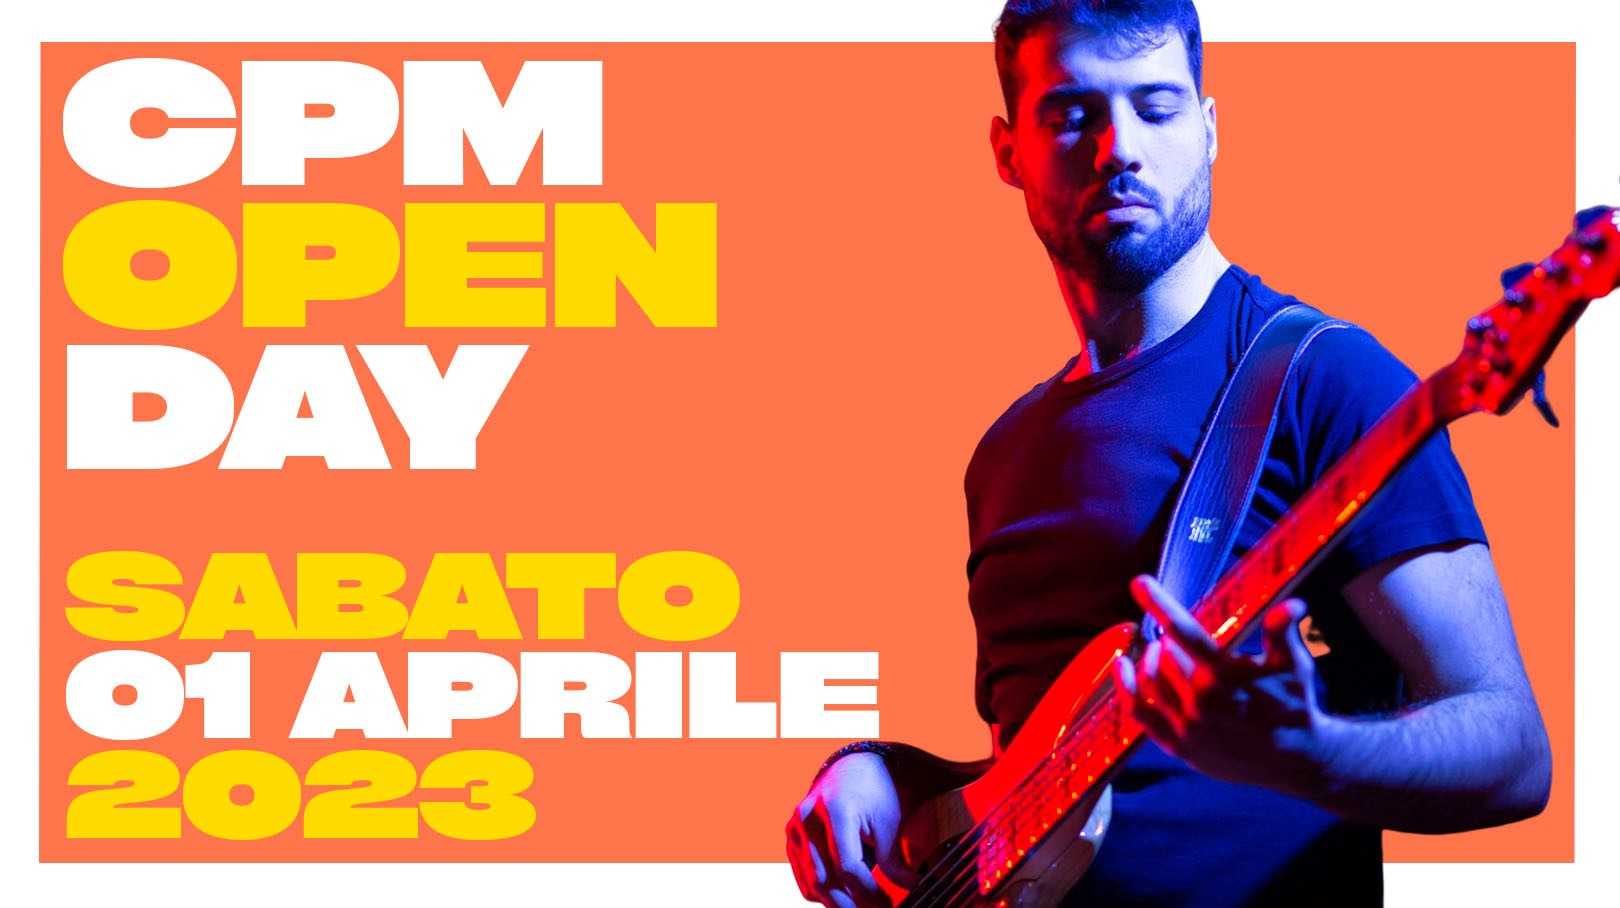 Sabato 1 aprile torna l'OPEN DAY al CPM Music Institute di Milano. Scuola di Musica fondata e presieduta da Franco Mussida.